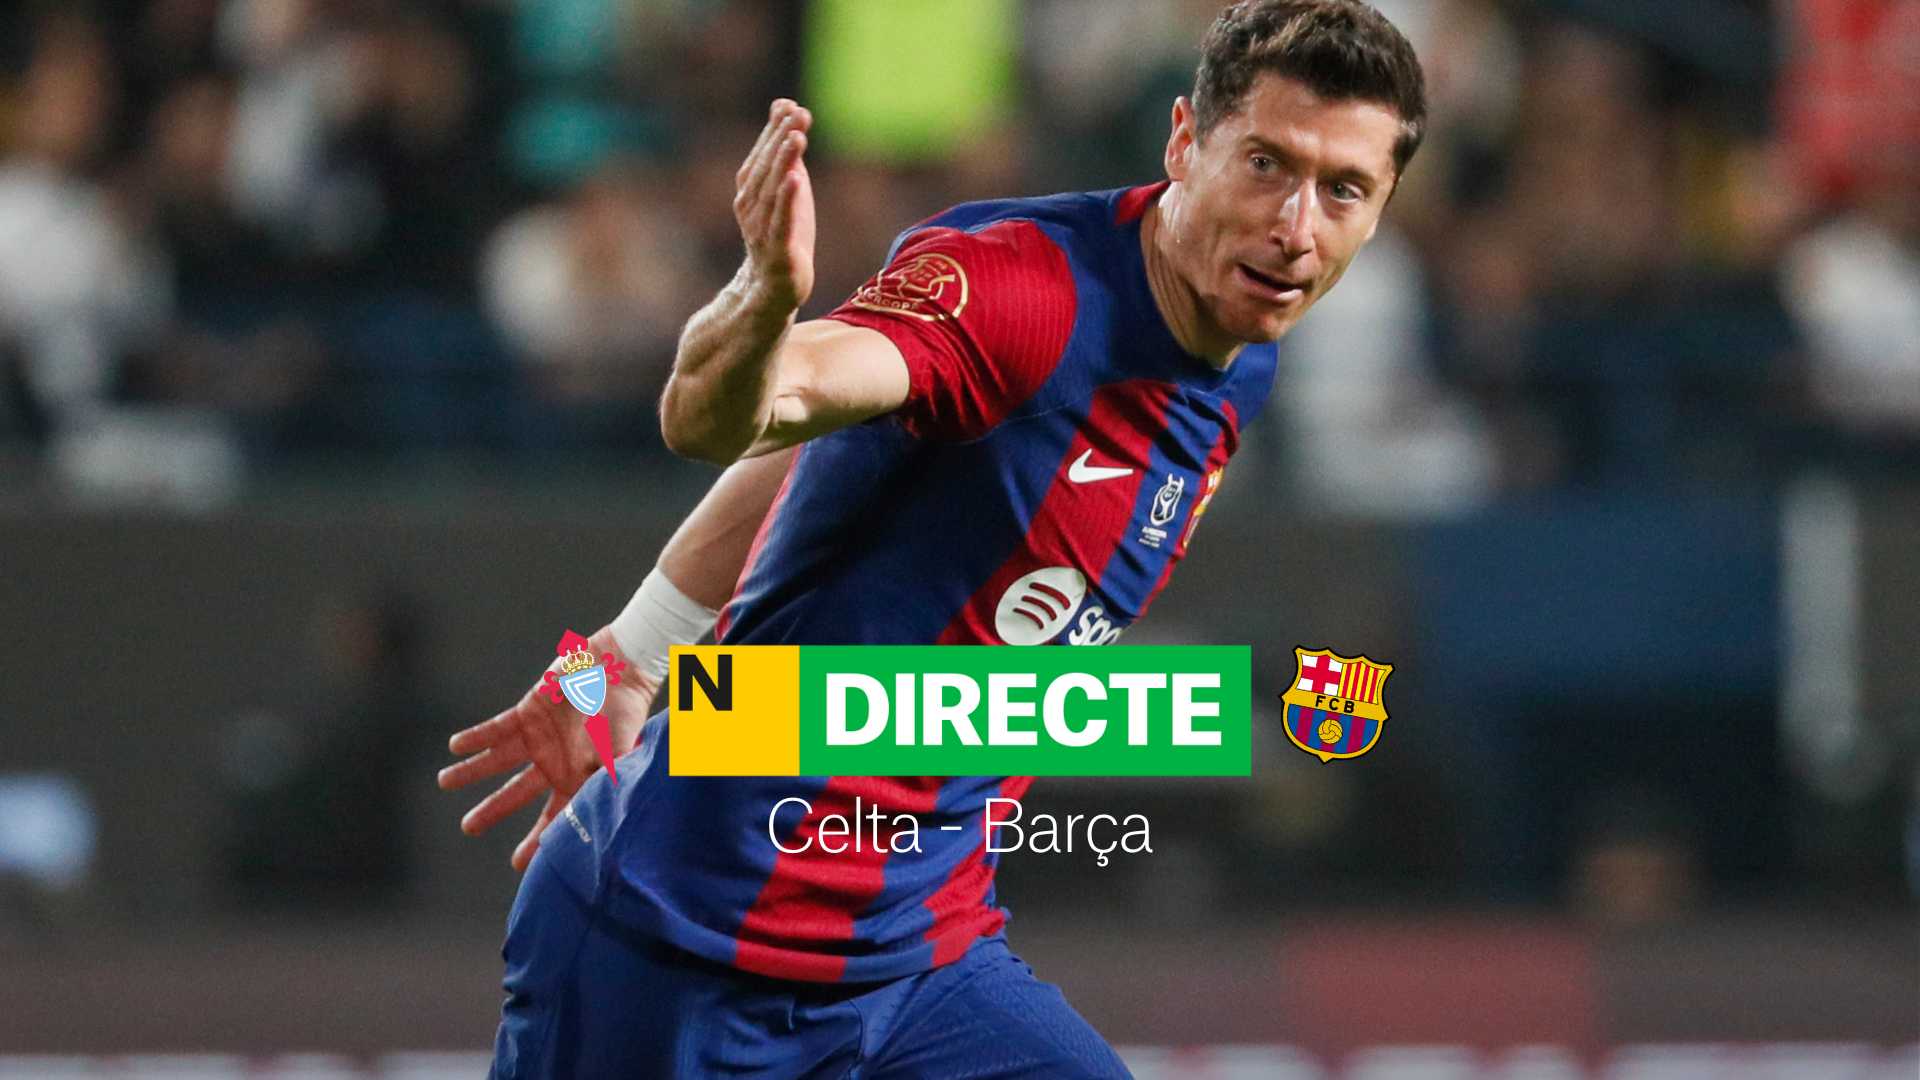 Celta-Barça de LaLiga EA Sports, hoy en Directo | Resultado, resumen y goles